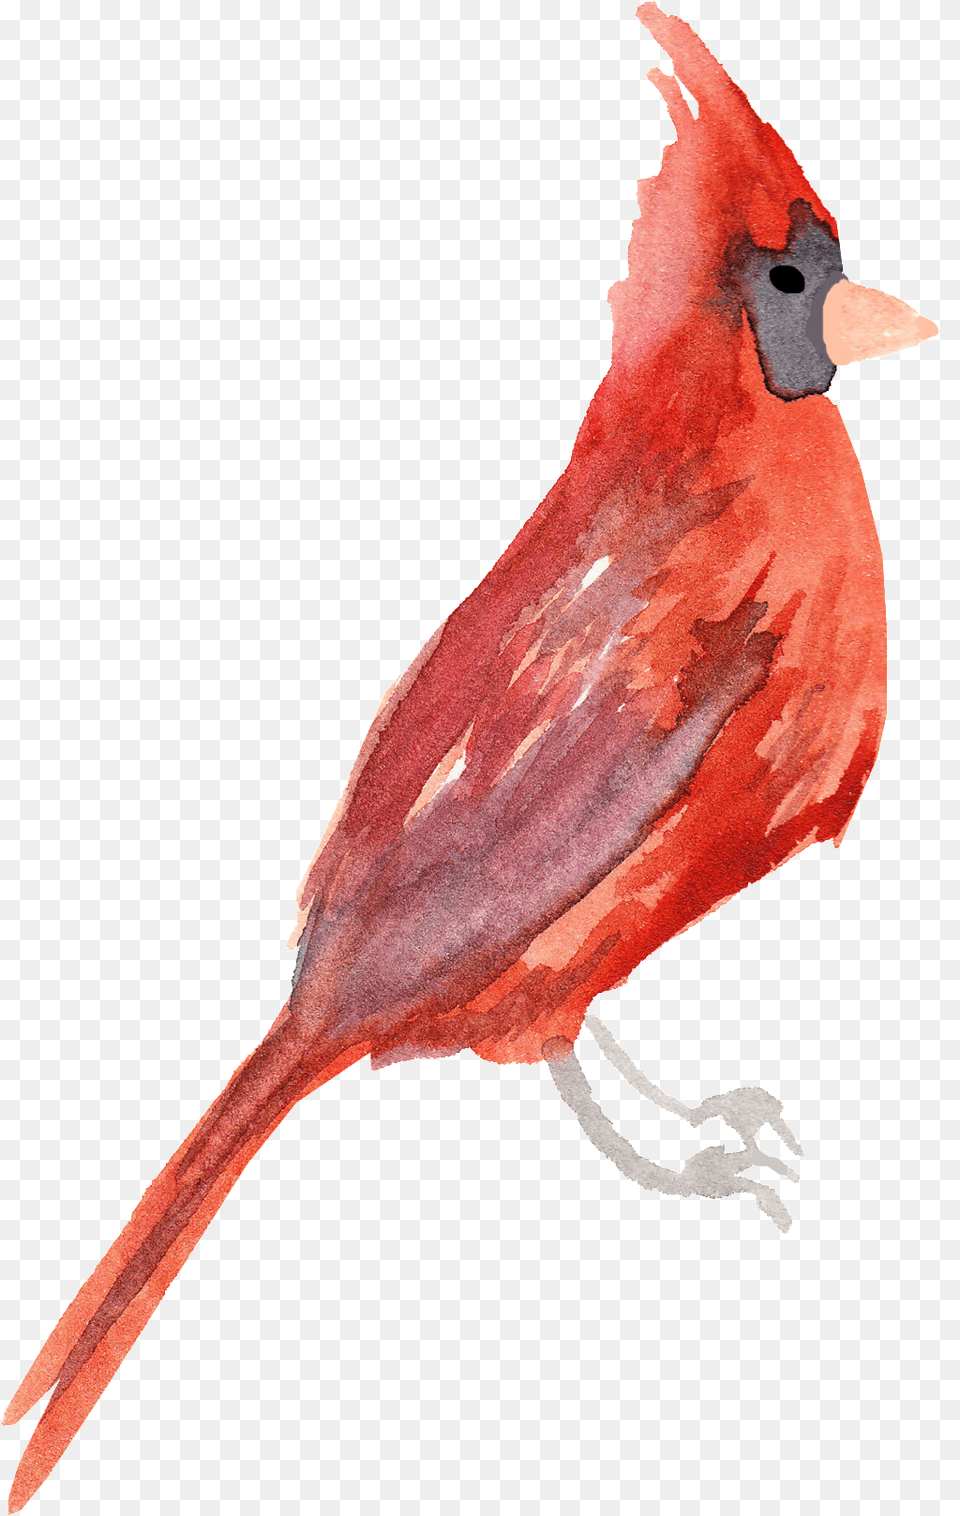 Crystal Red Bird Decorative, Animal, Cardinal, Blade, Dagger Free Transparent Png